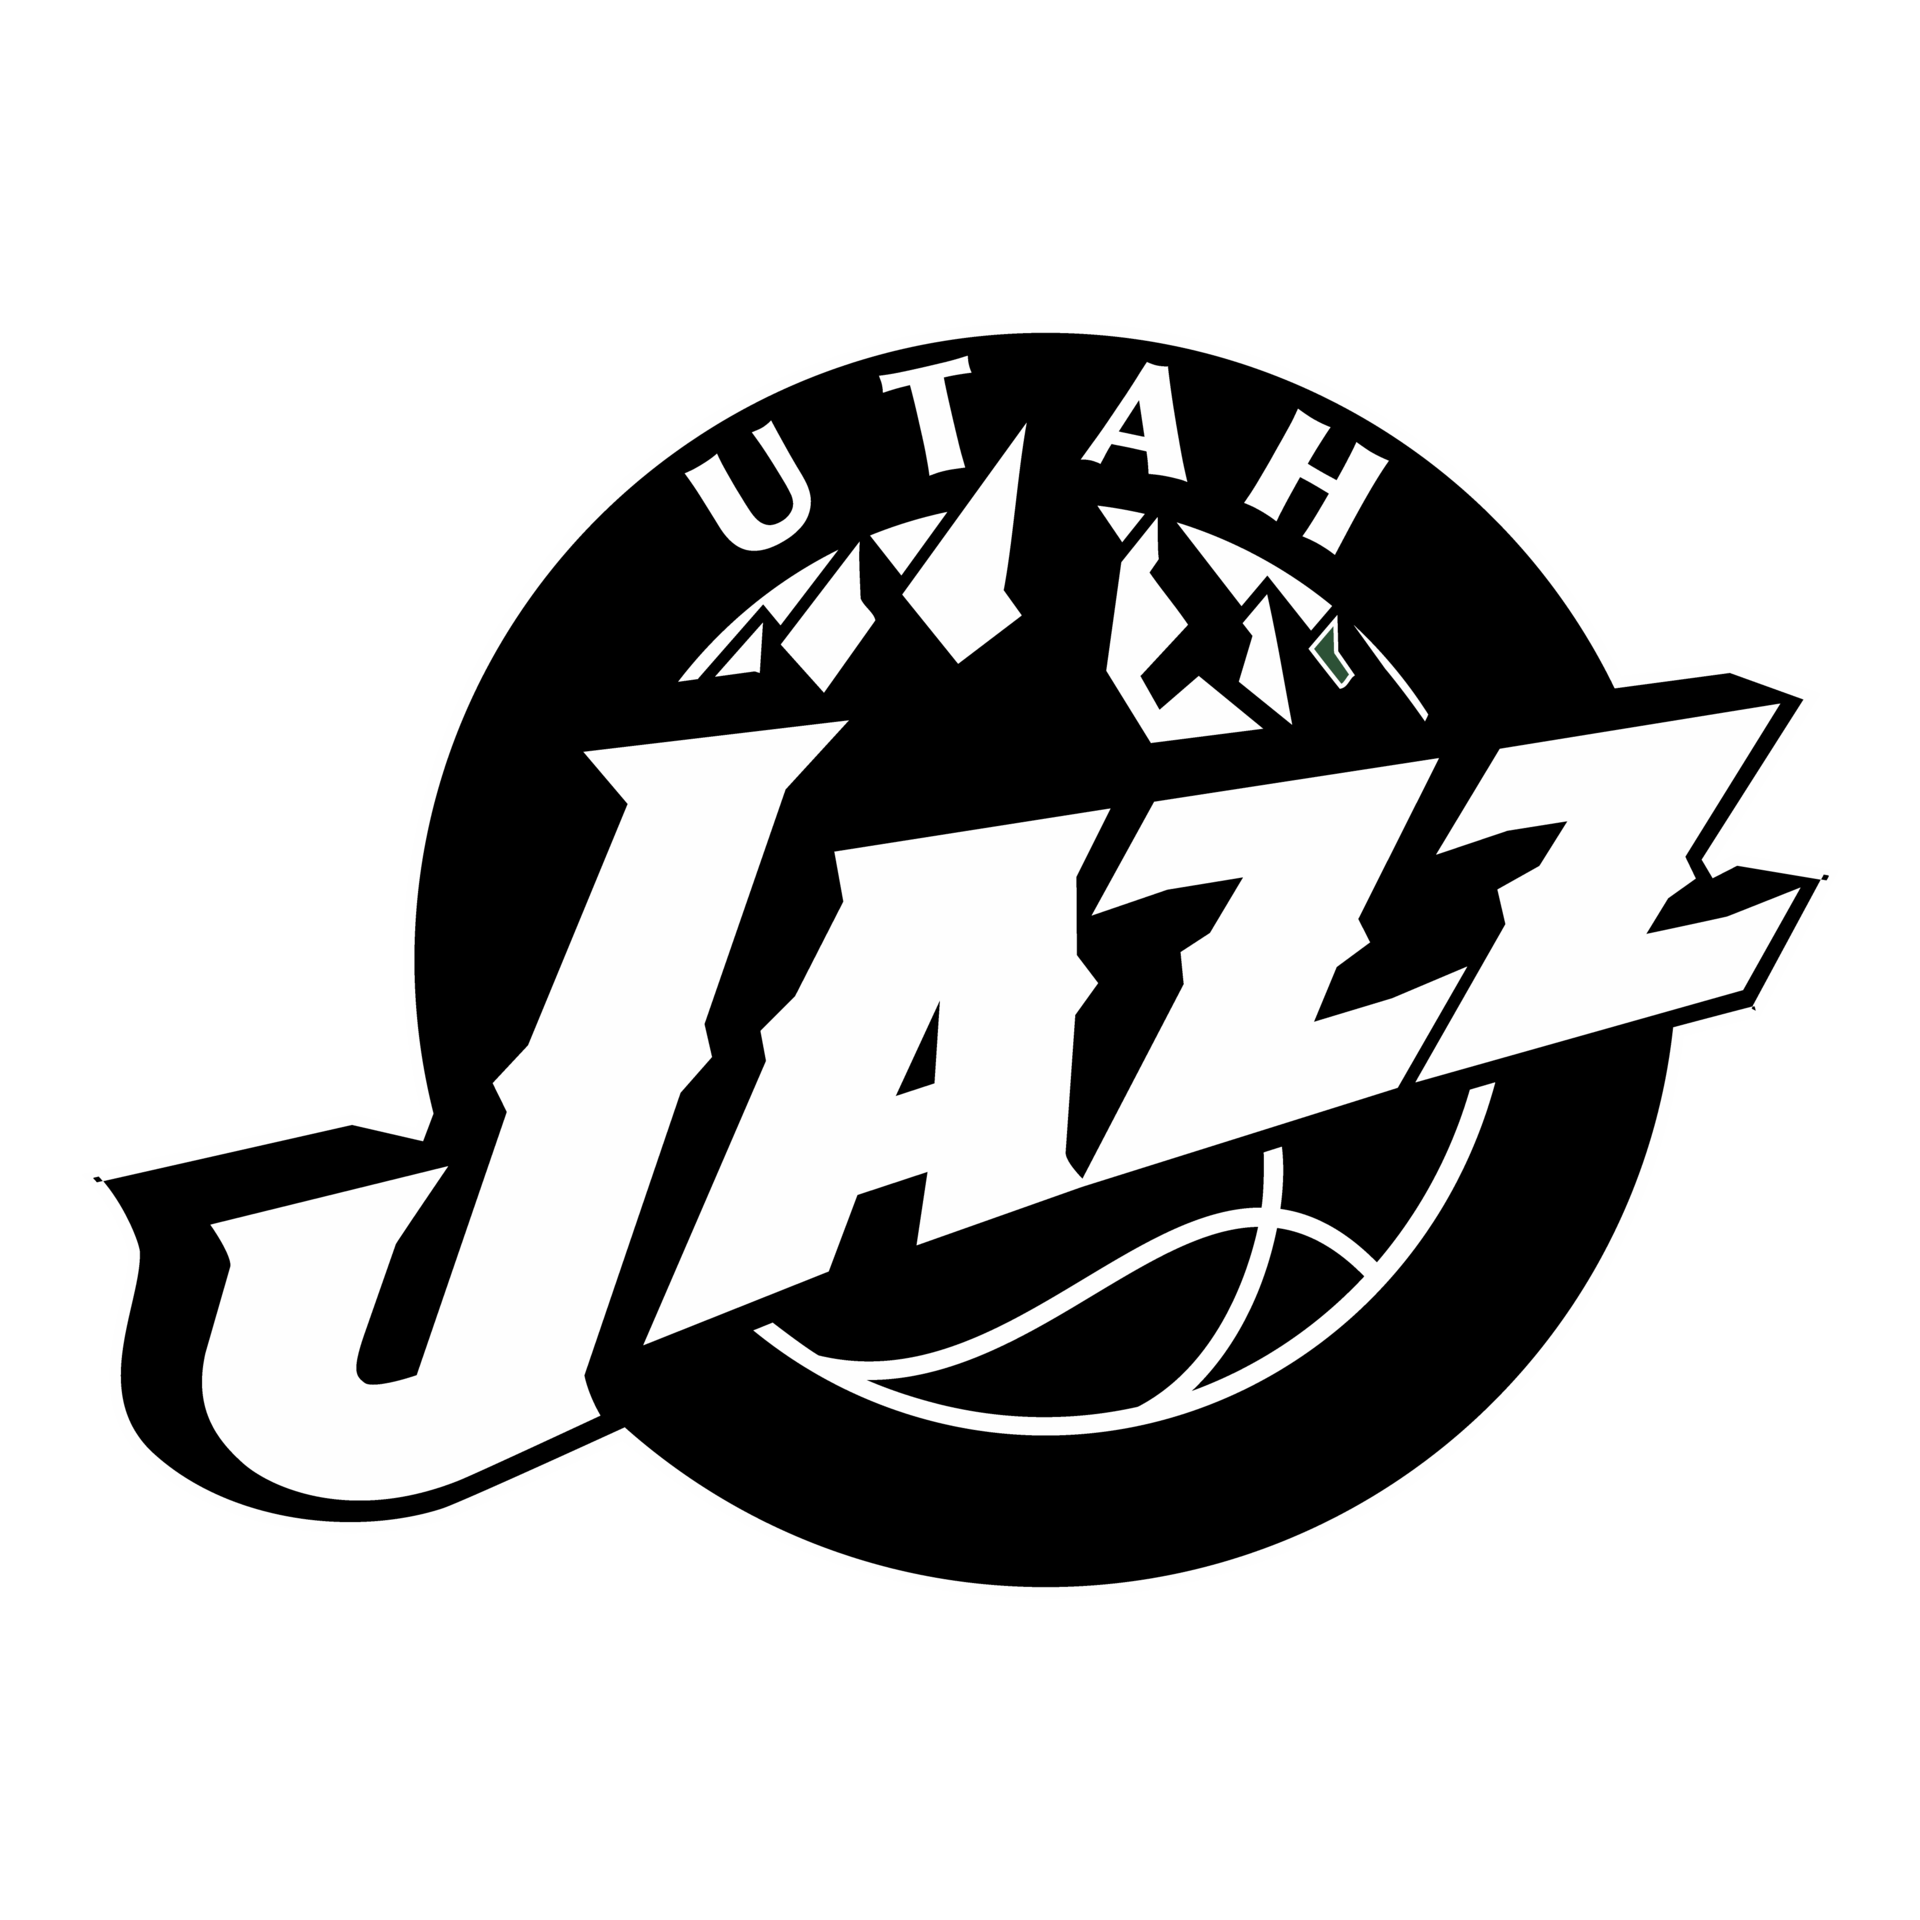 Utah jazz logo black and white transparent PNG 26555250 PNG